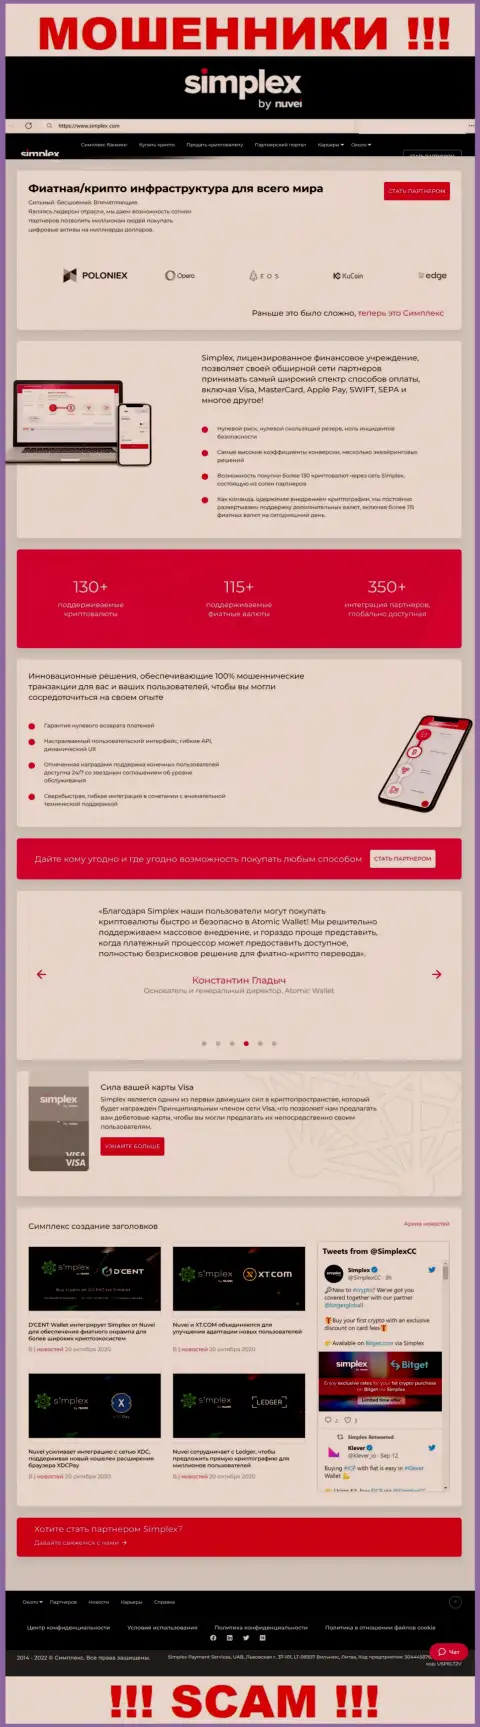 Внешний вид официальной веб странички мошеннической конторы Simplex